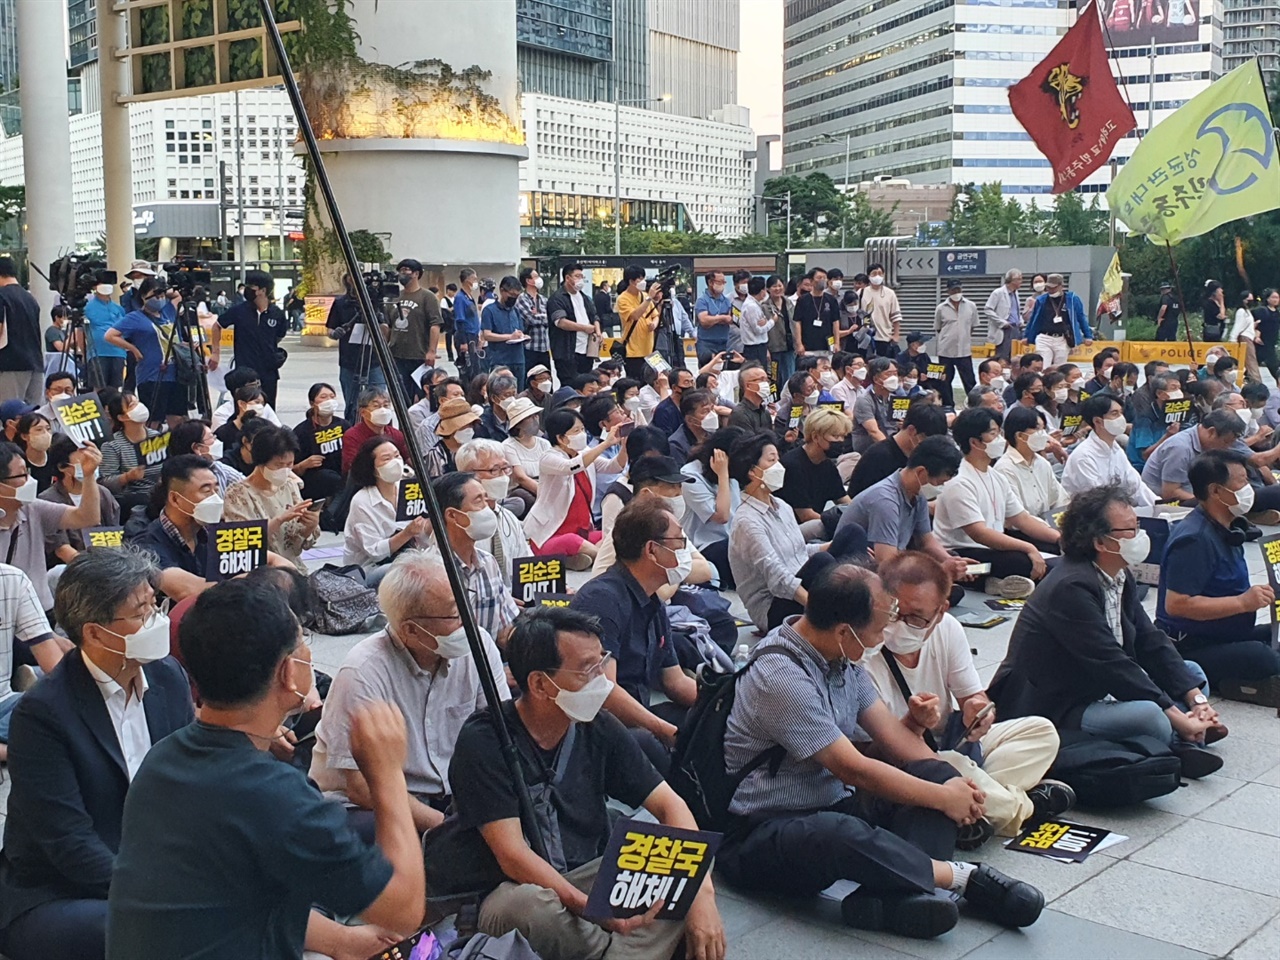 9월2일 오후 서울 용산역 앞 광장에서 여러 민주화단체들 주관하에 많은 시민들과 학생들이 모여 '밀정 김순호 사퇴 및 경찰국 해체를 위한 시민문화제'가 열렸다. 